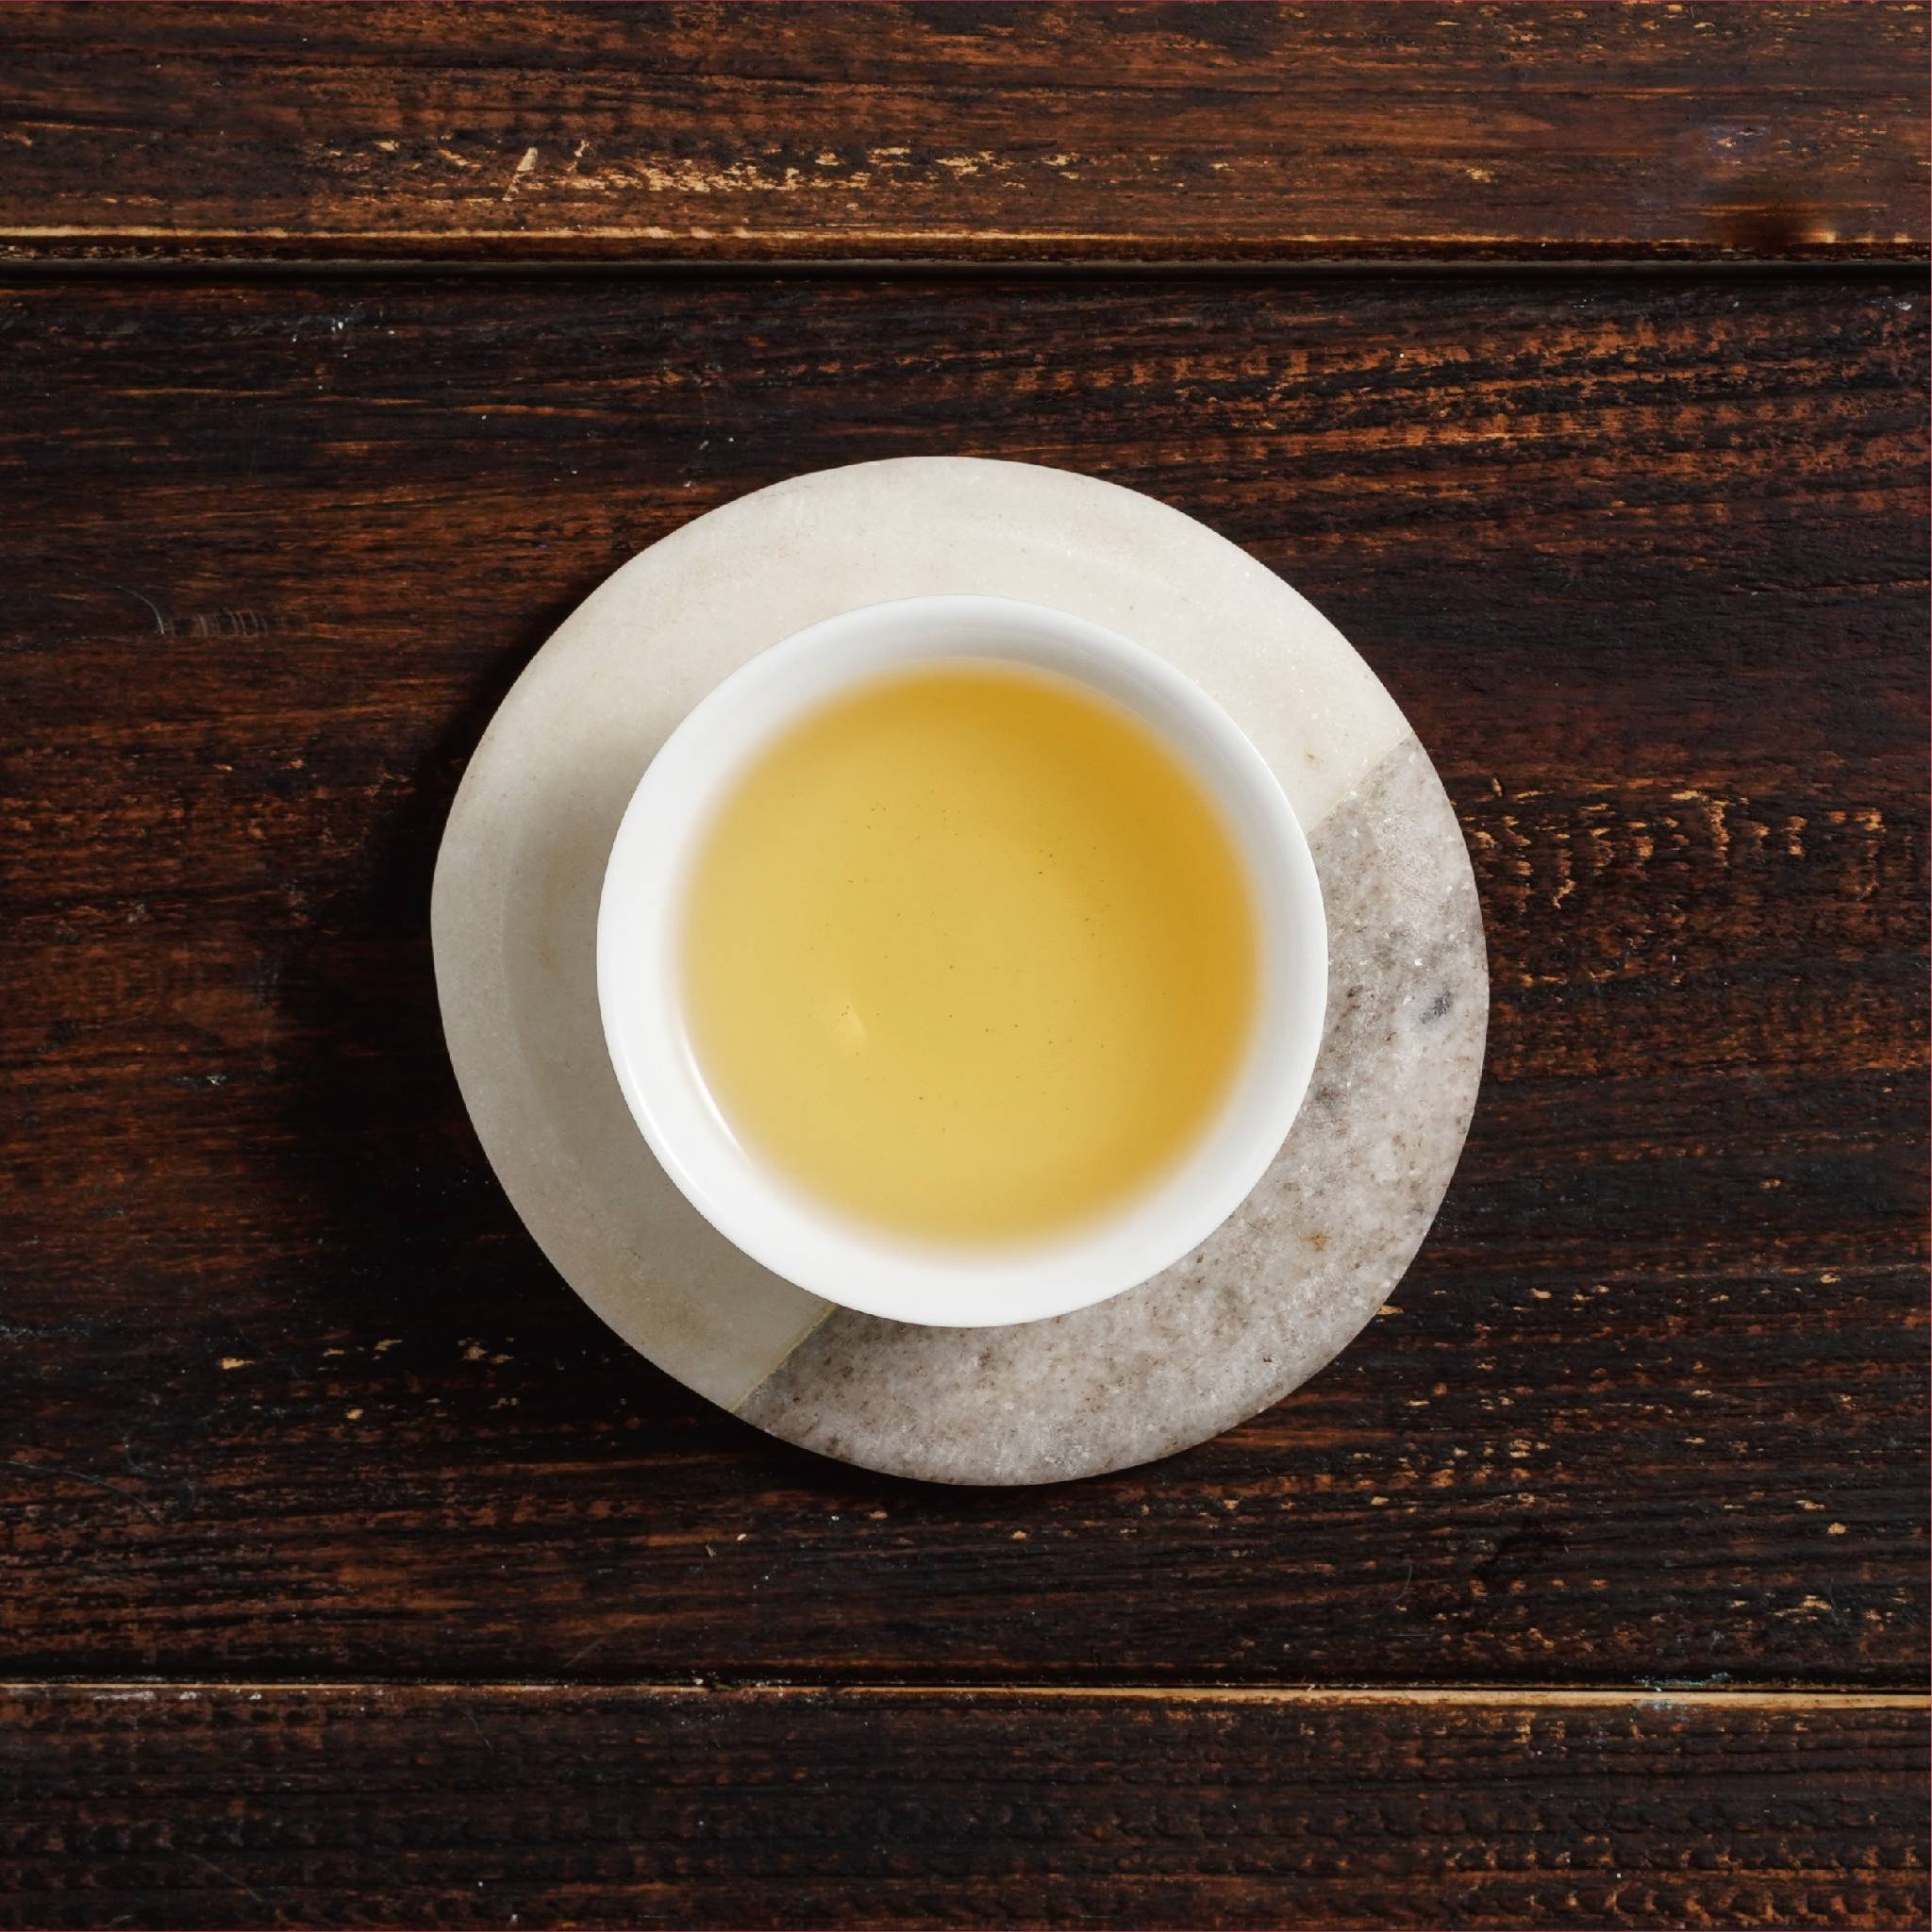 alishan ali mountain tea liquor in cup